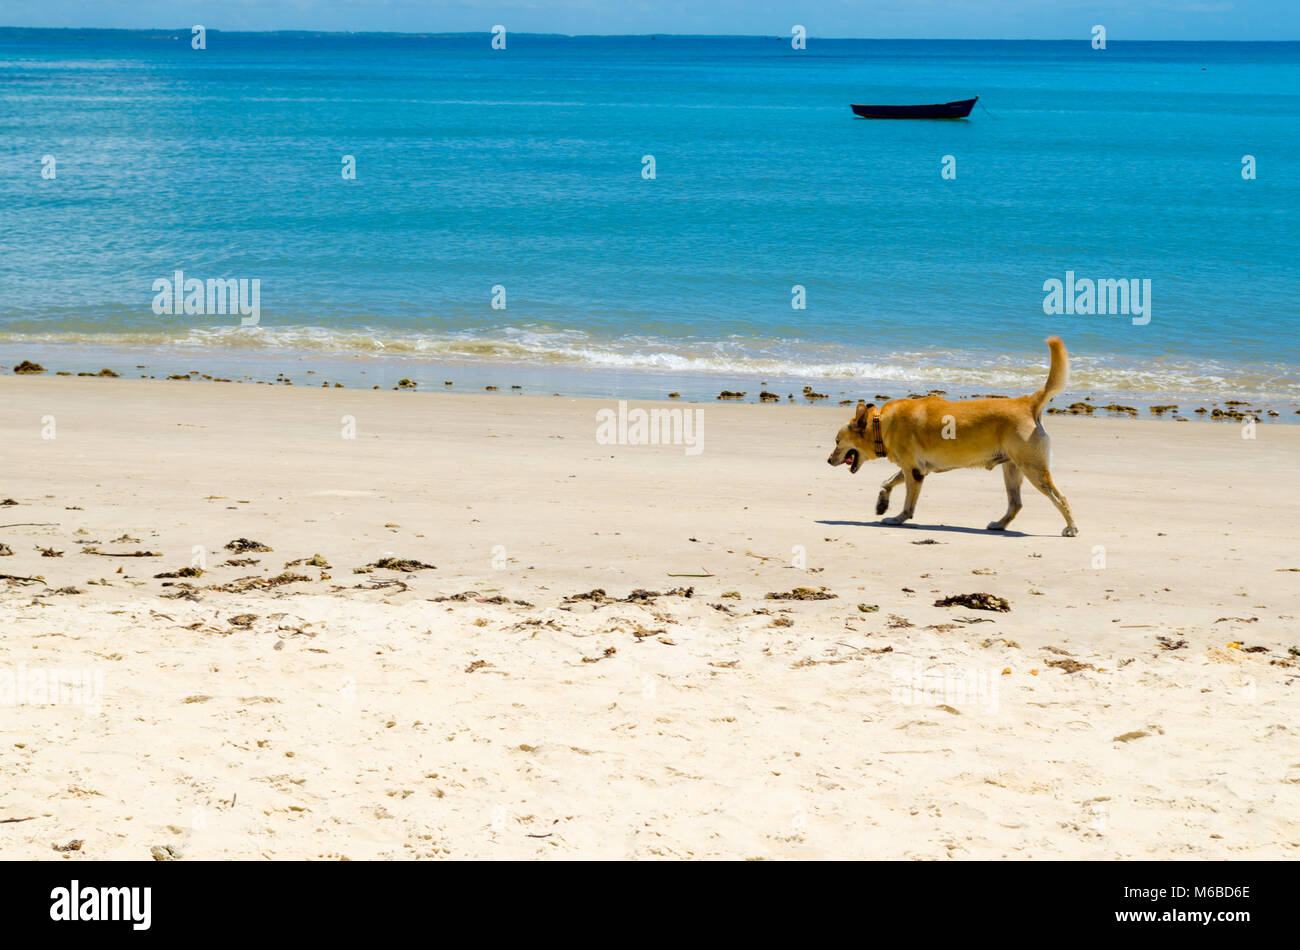 Hund Wandern auf dem Sand von einem sonnigen Strand. Die Szene besteht aus einem wunderschönen blauen Meer und ein Kanu im Hintergrund Stockfoto